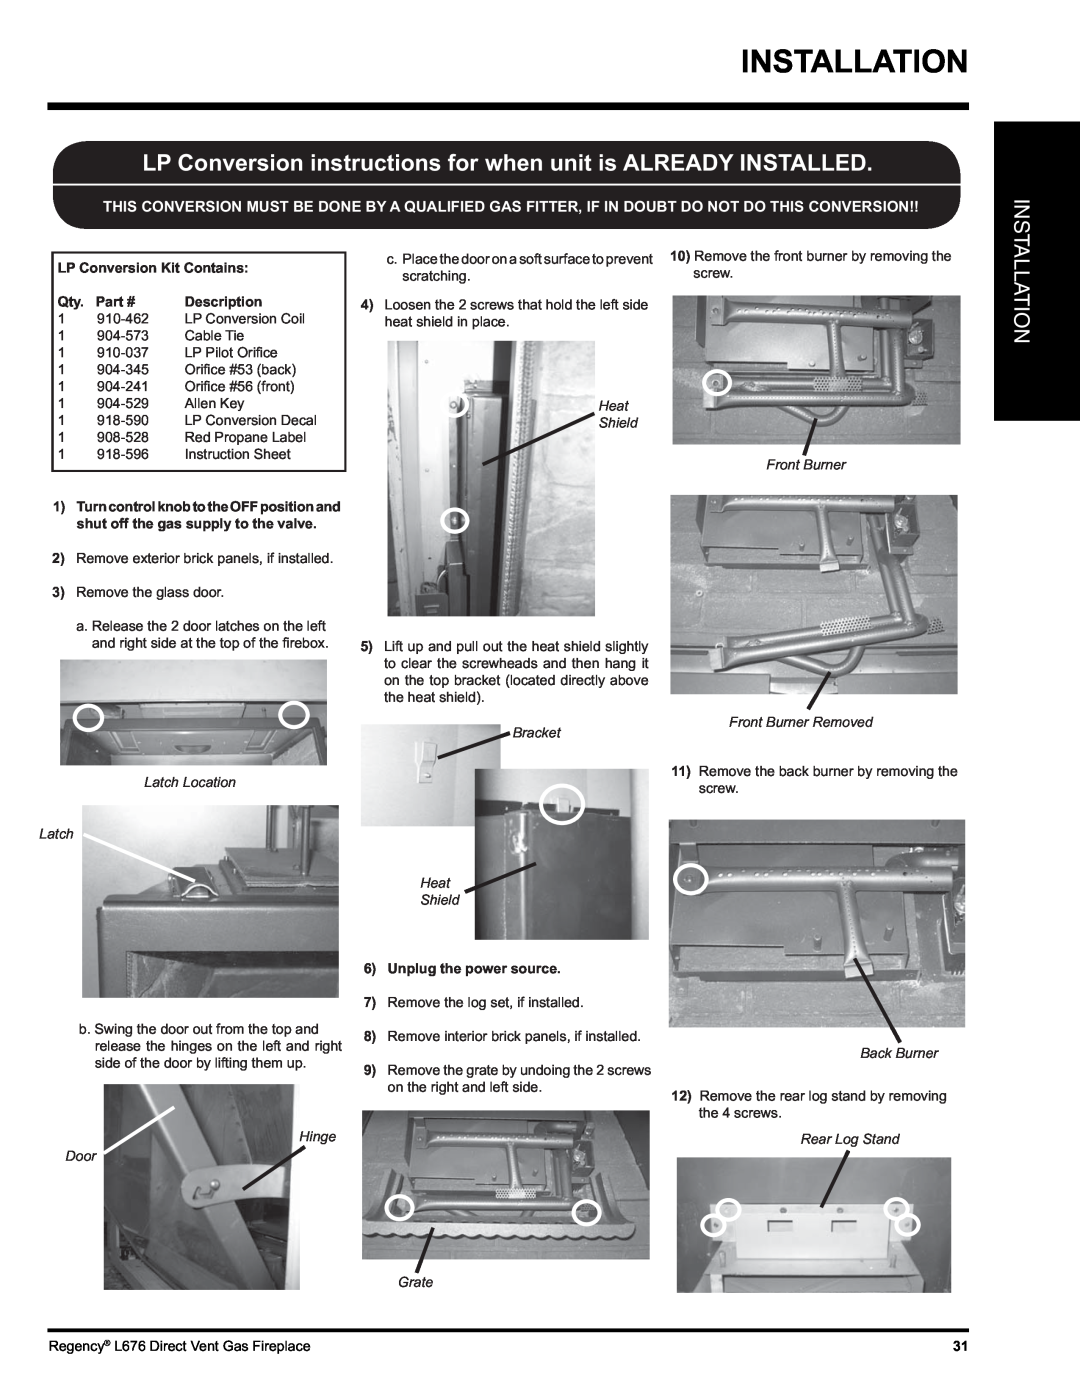 Regency L676 Installation, LP Conversion Kit Contains, Part #, Description, Heat Shield Front Burner, Latch Location Latch 